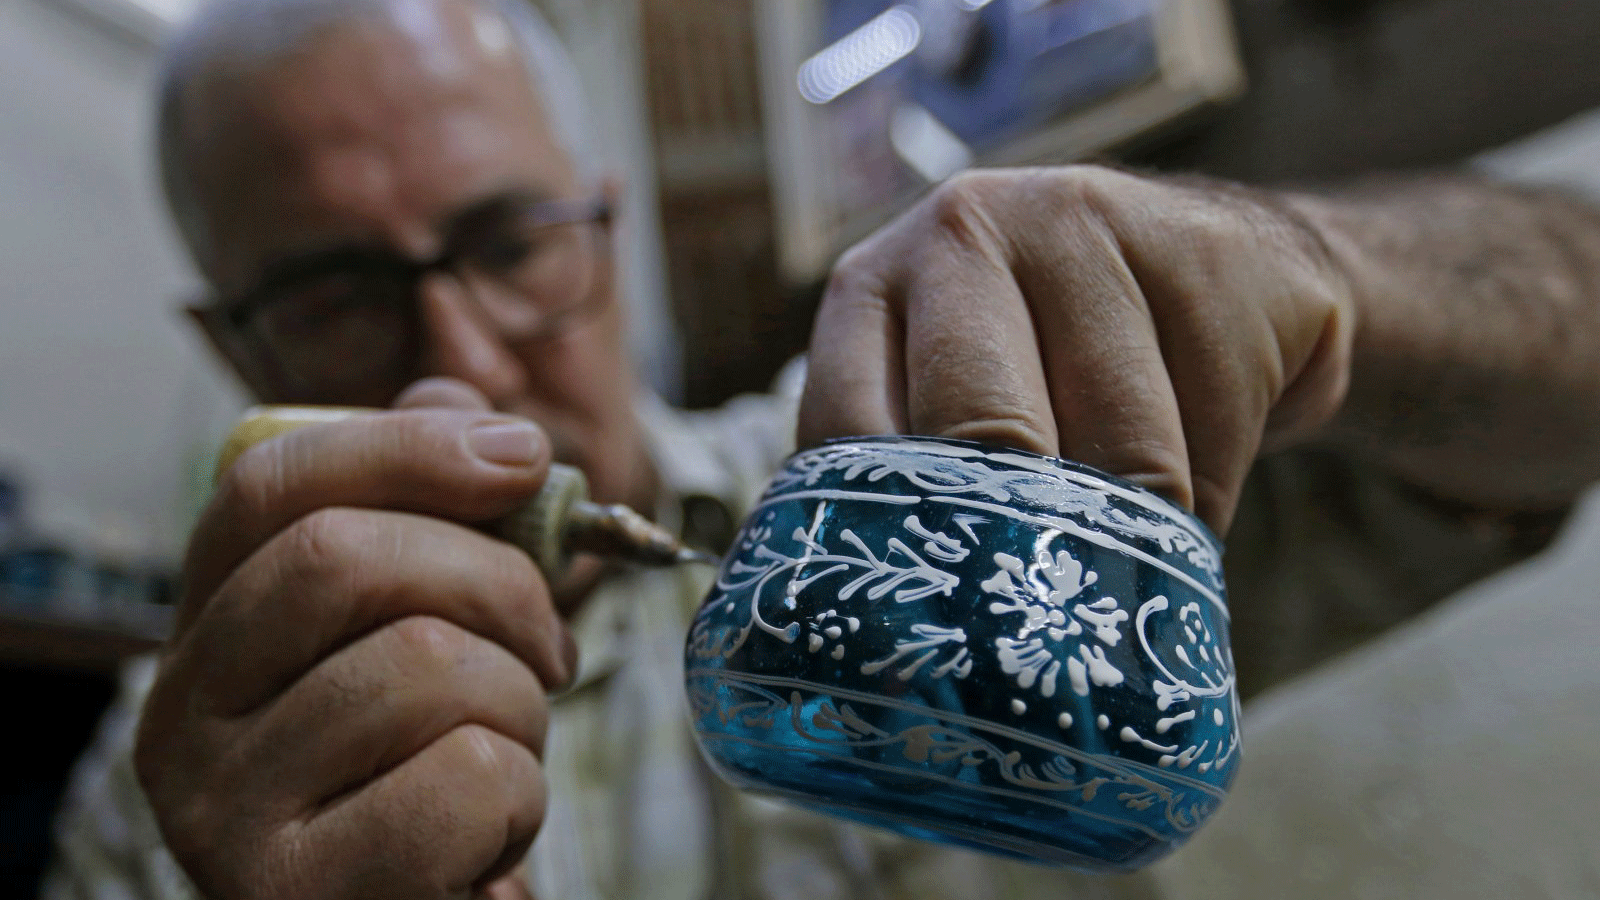 يبذل محمّد الحلاق وشقيقاه قصارى جهدهم للحفاظ على حرفة صناعة الزجاج اليدوي من الاندثار